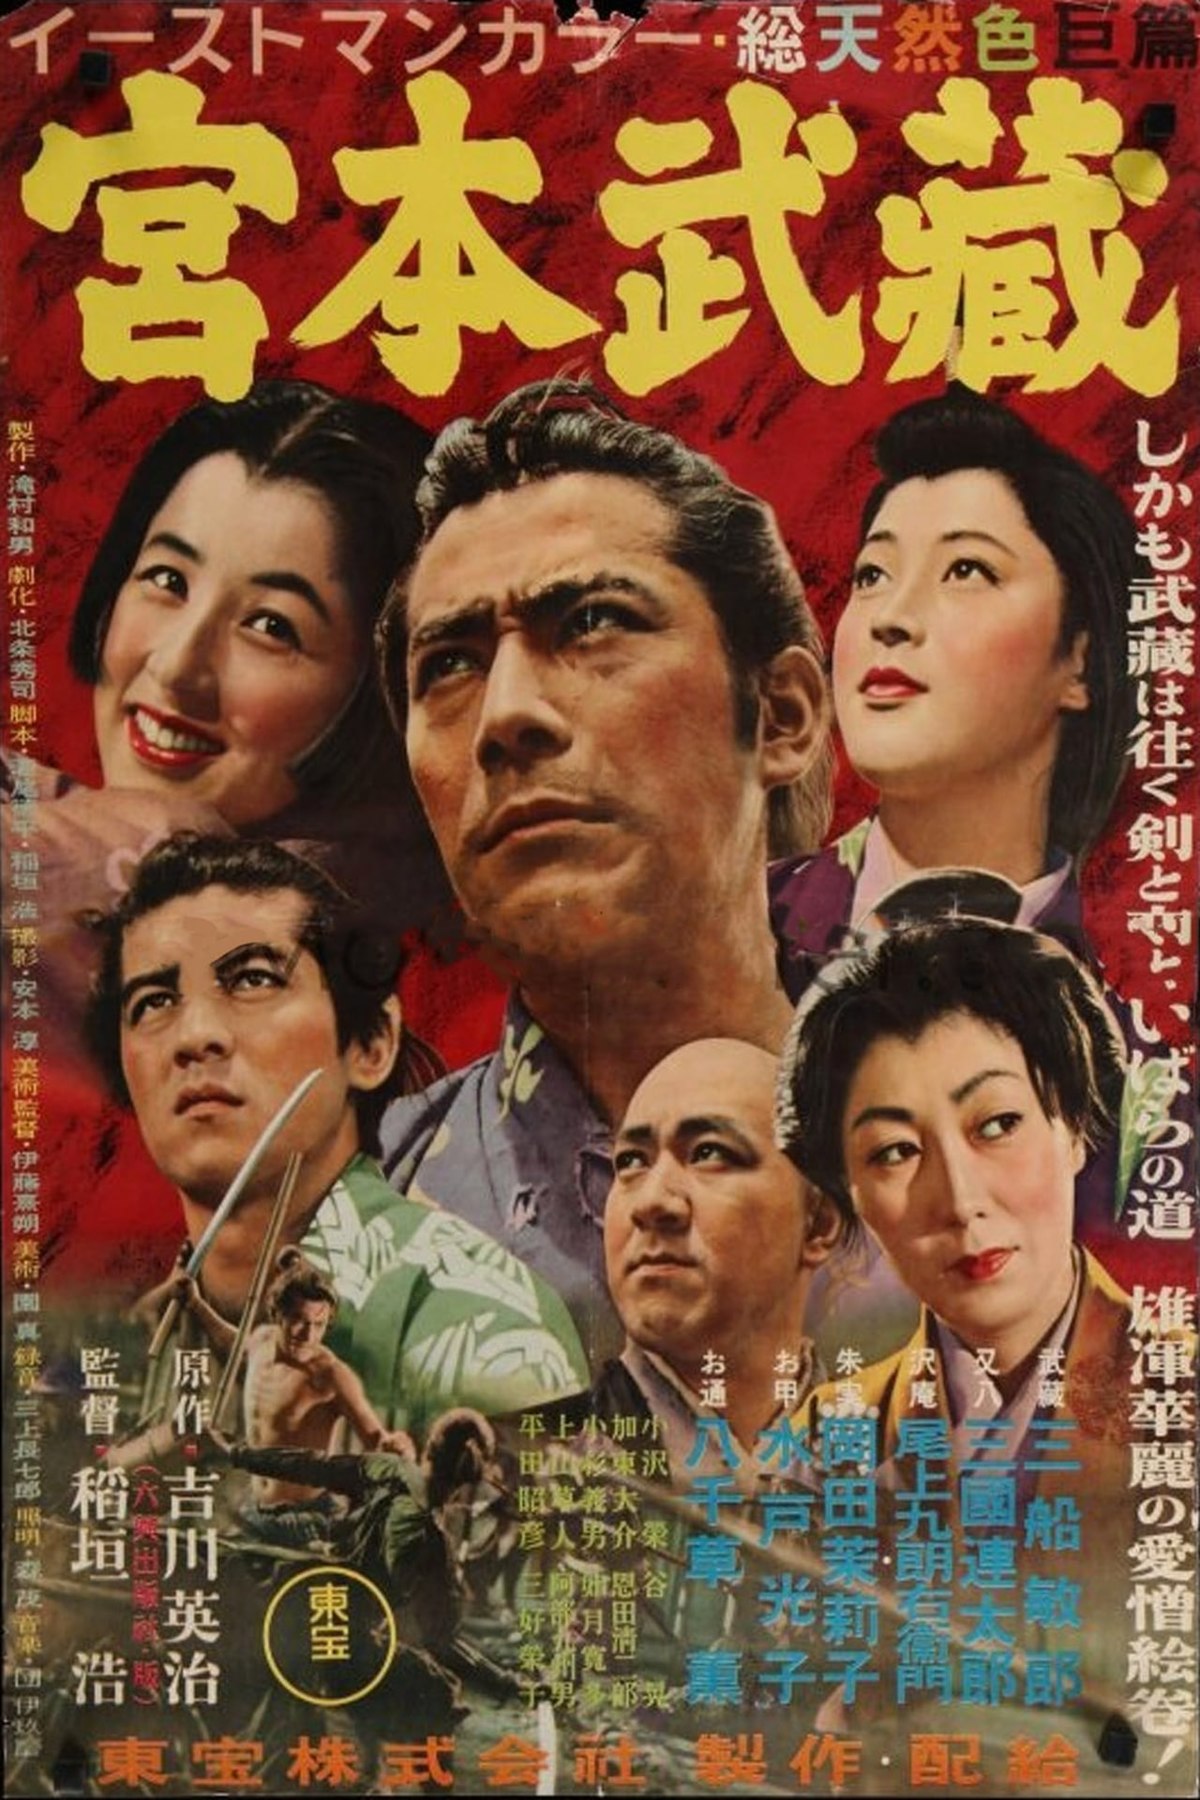 宮本武蔵 1954年の映画 Wikipedia